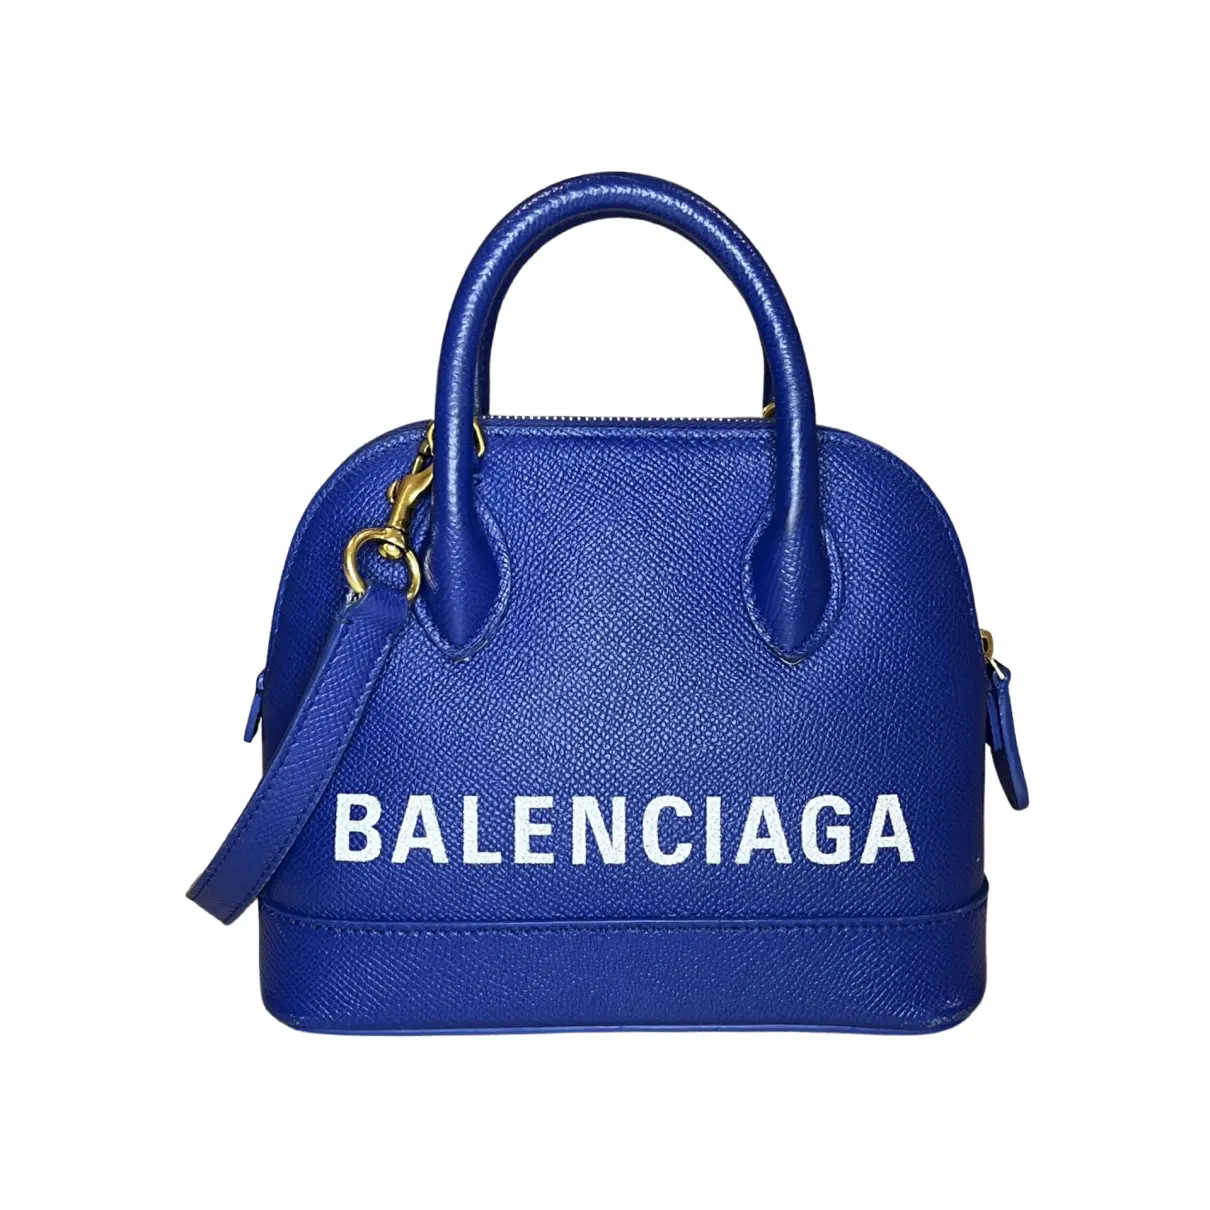 Buy Balenciaga Ville Top Handle leather handbag online